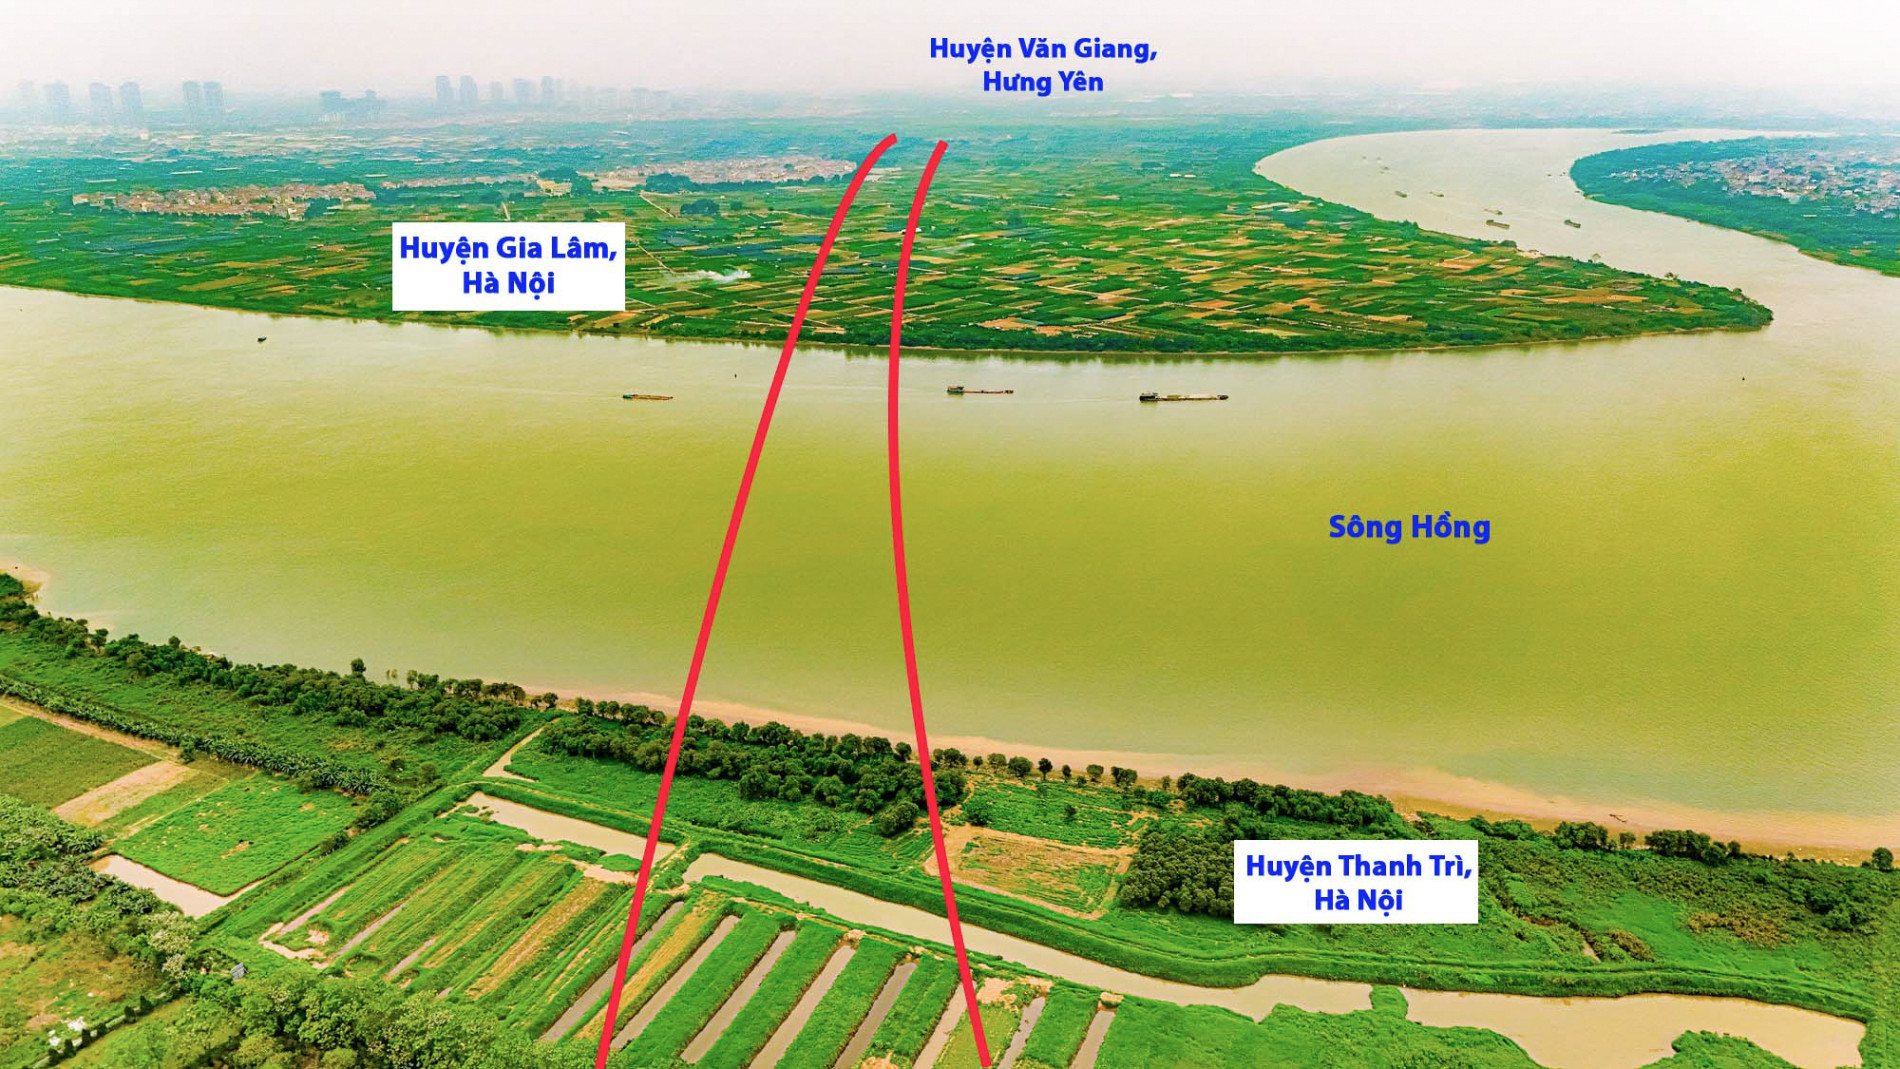 Toàn cảnh khu vực được quy hoạch xây cầu vượt sông Hồng, xung quanh là 3 siêu đô thị trị giá 13 tỷ USD lớn bậc nhất phía Bắc- Ảnh 2.